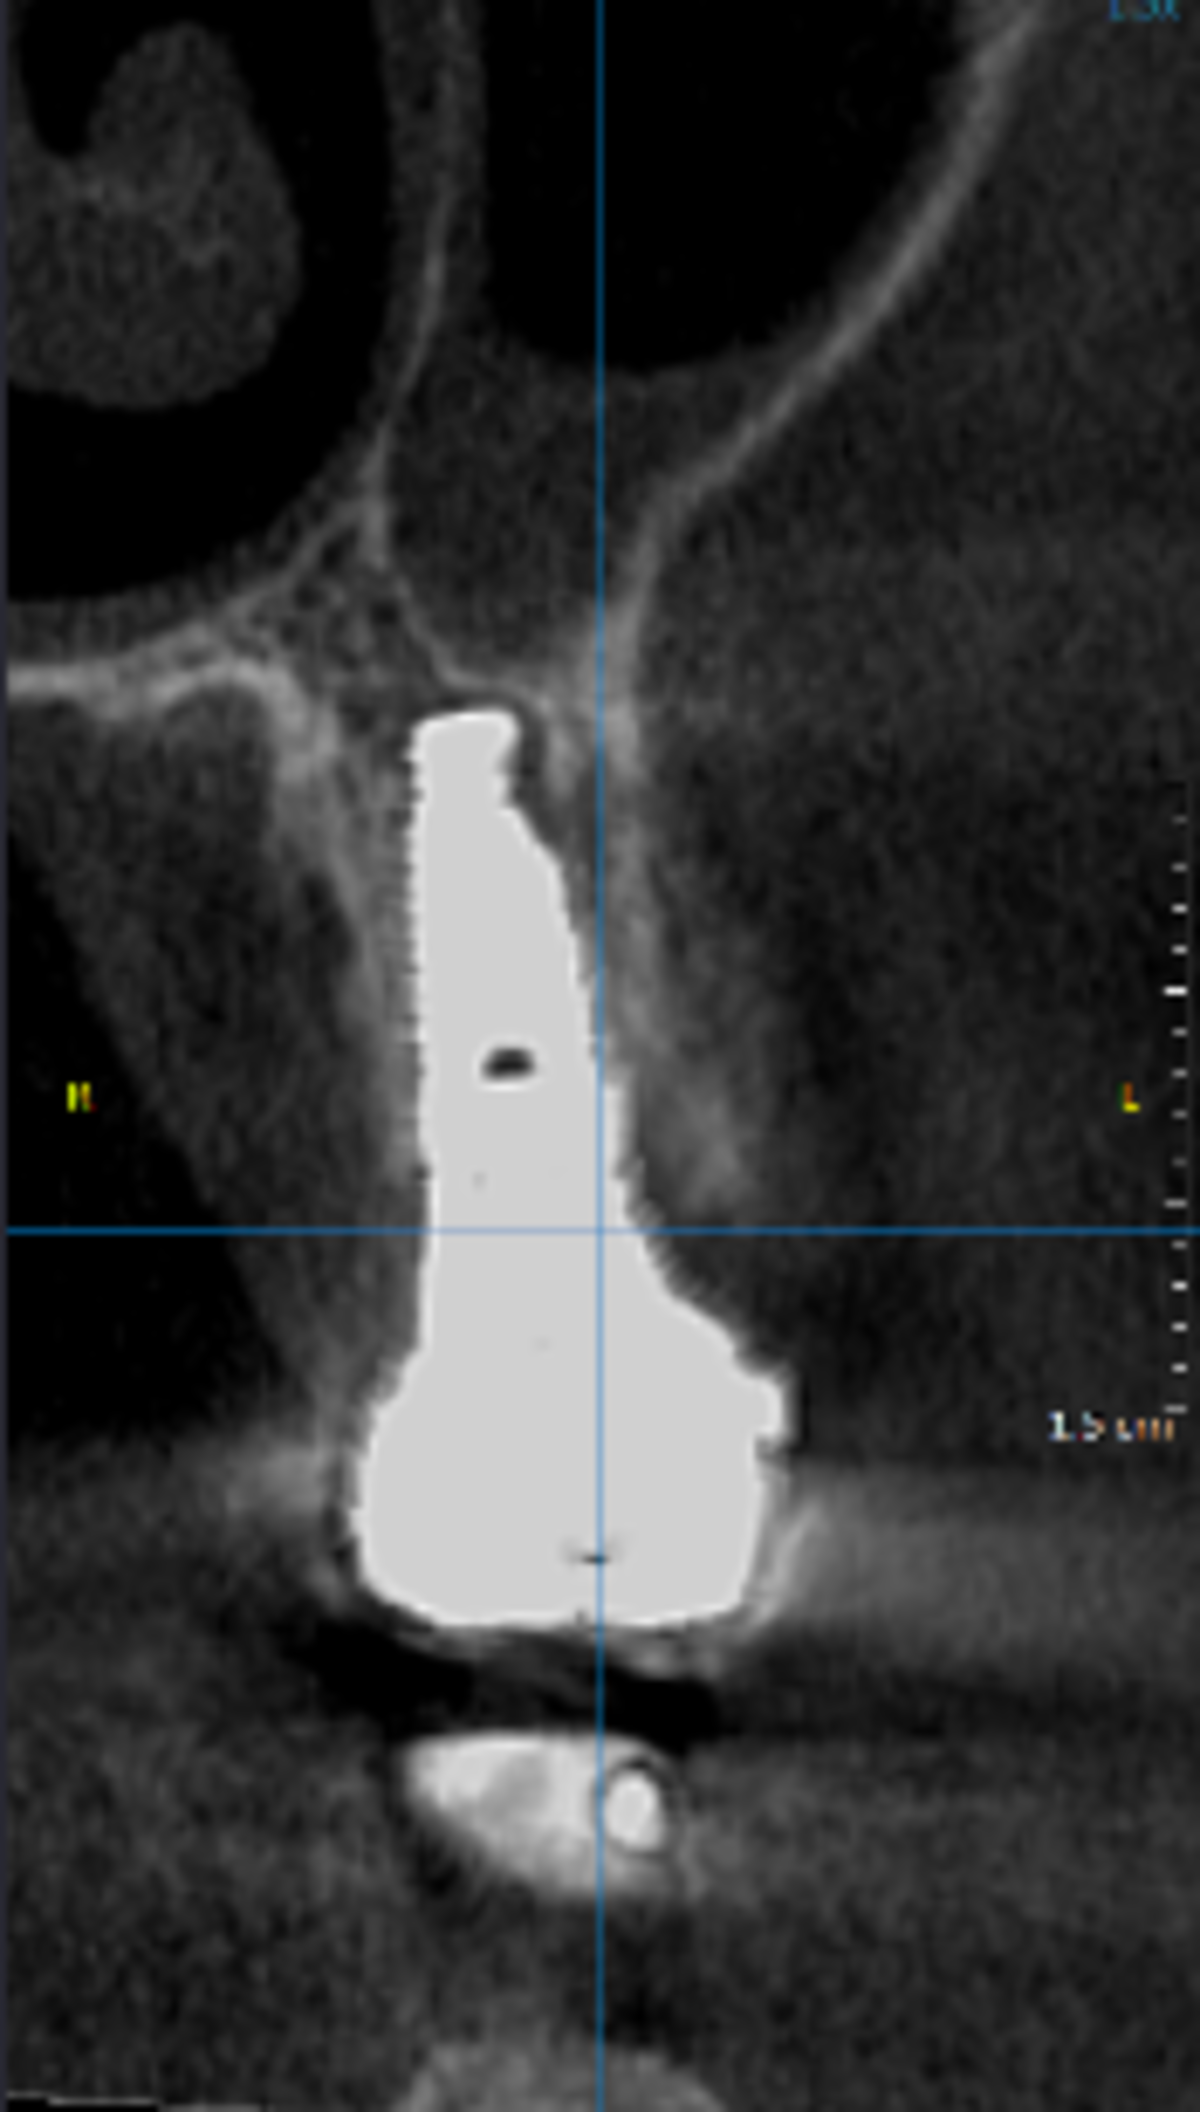 Tomografia Computorizada de Feixe Cónico (TCFC) em 1 ano